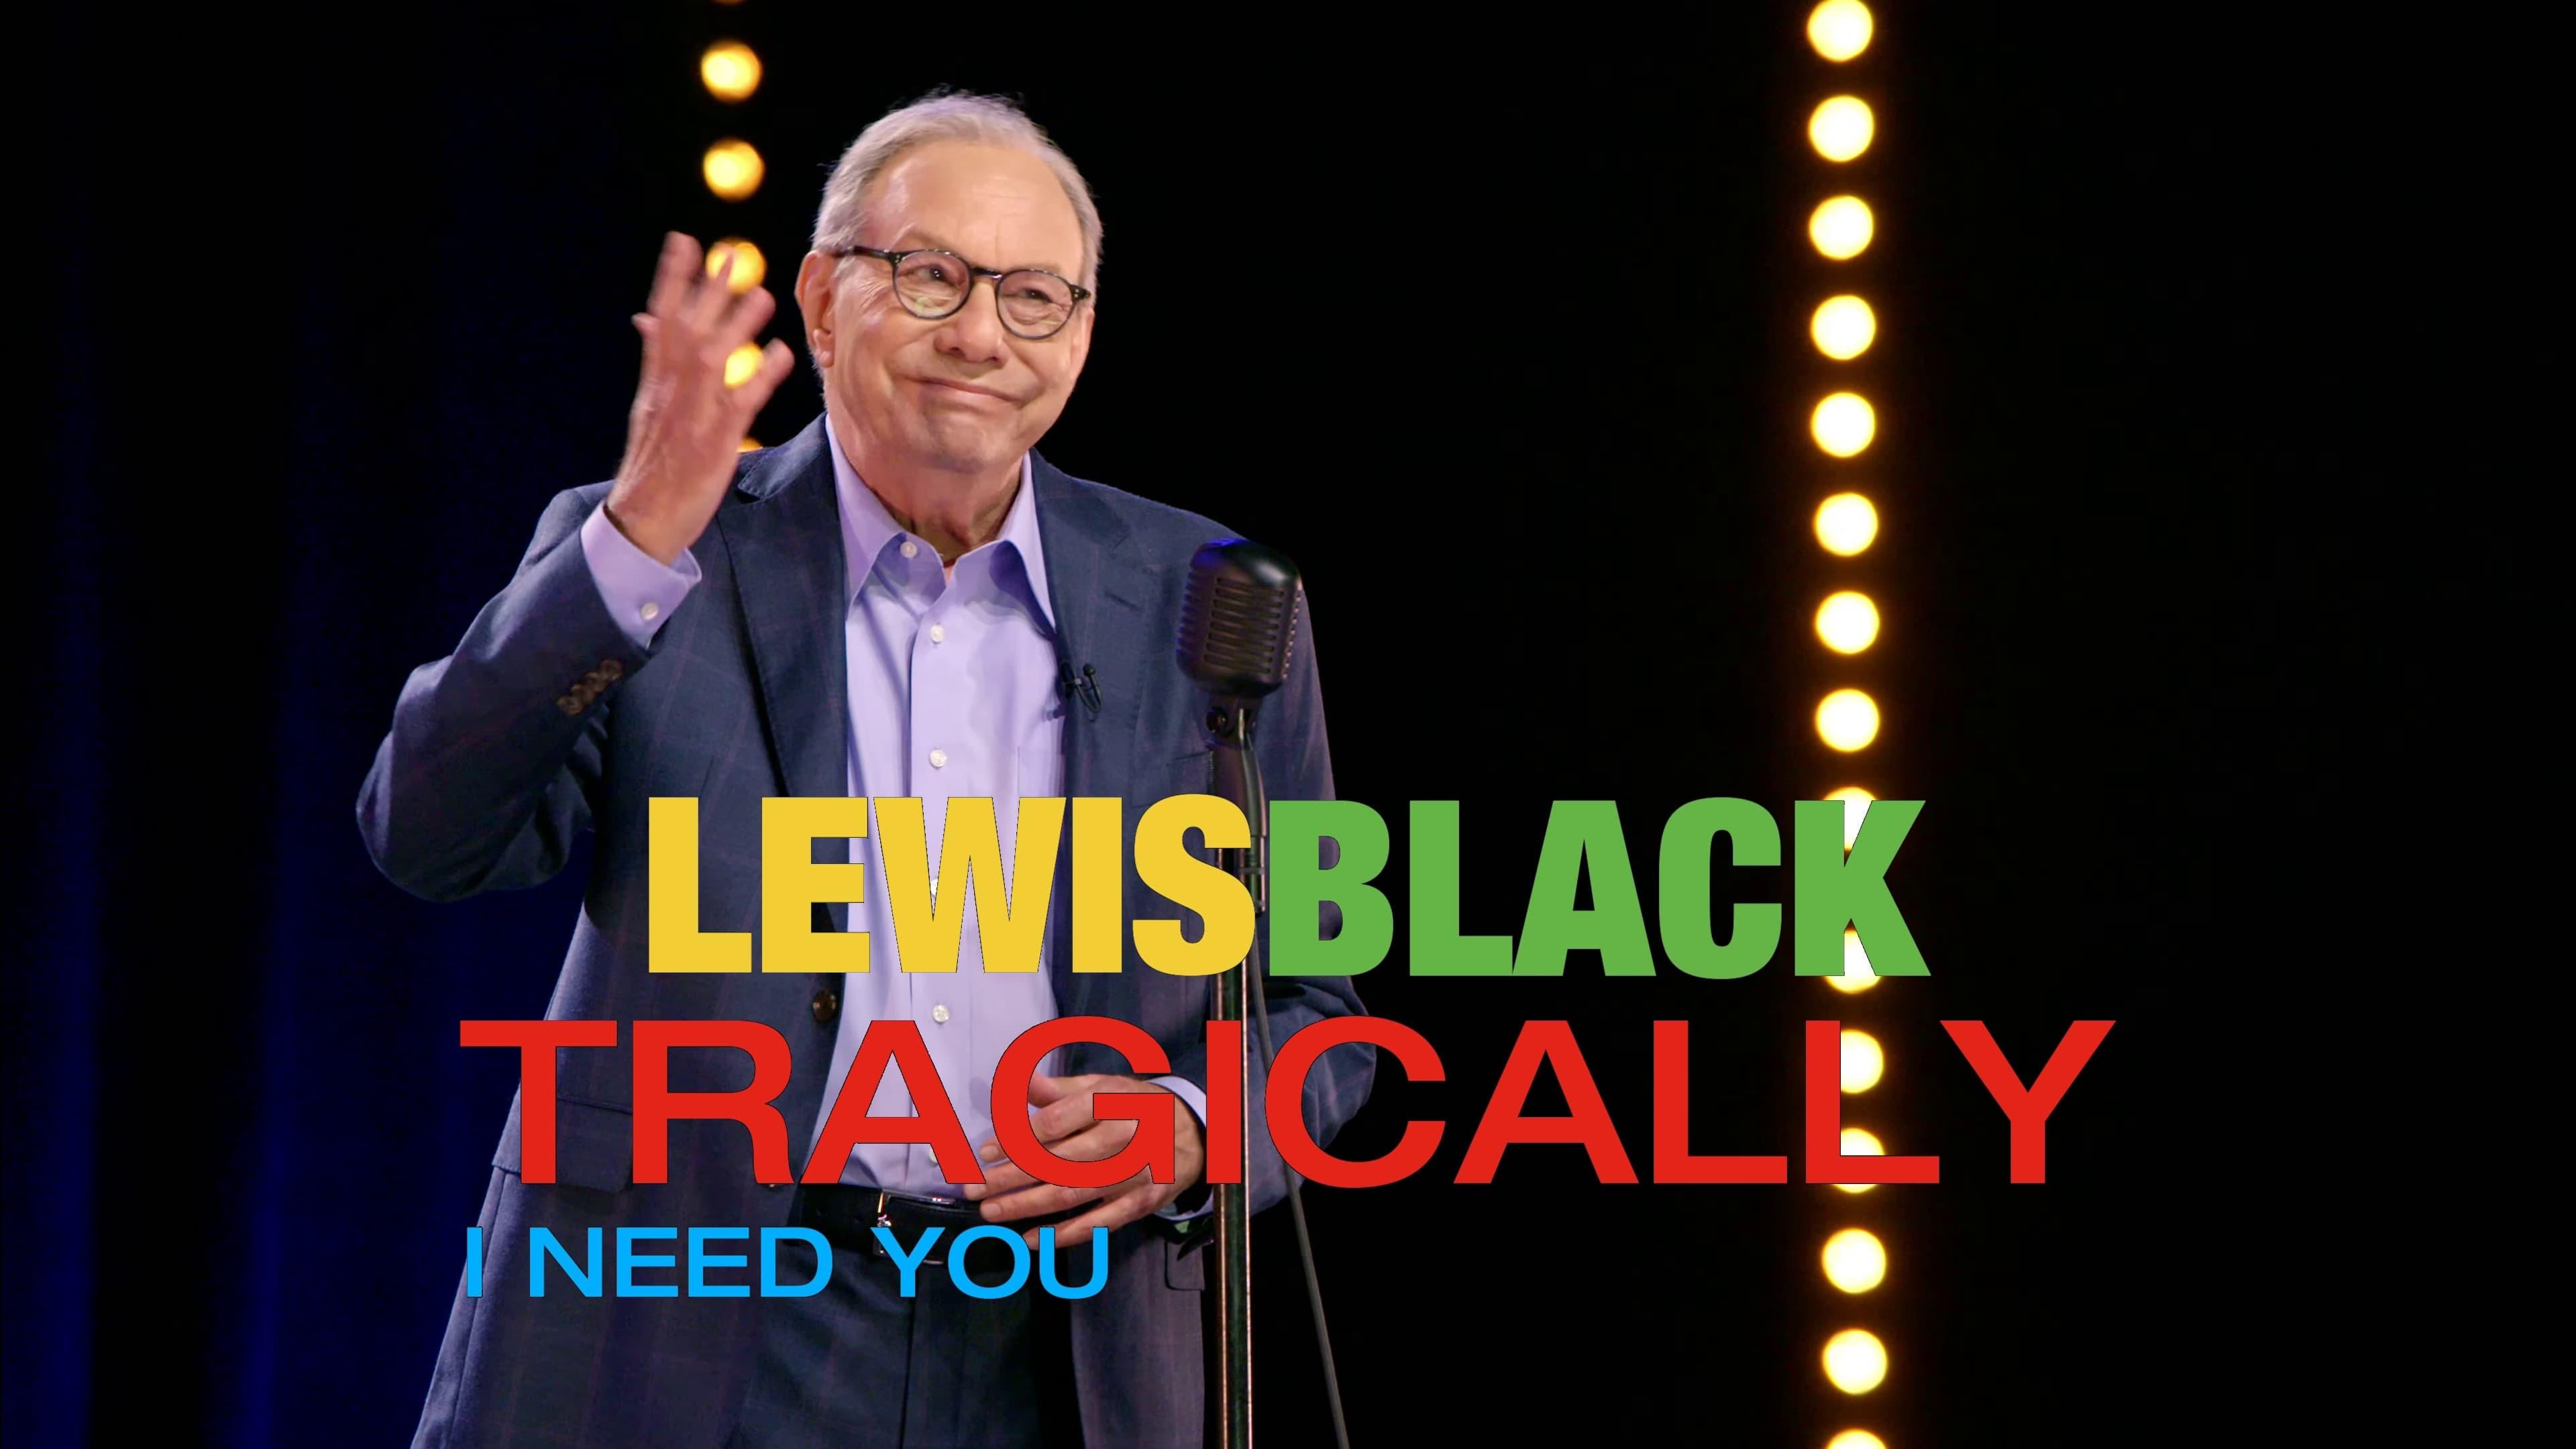 Lewis Black: Tragically, I Need You backdrop